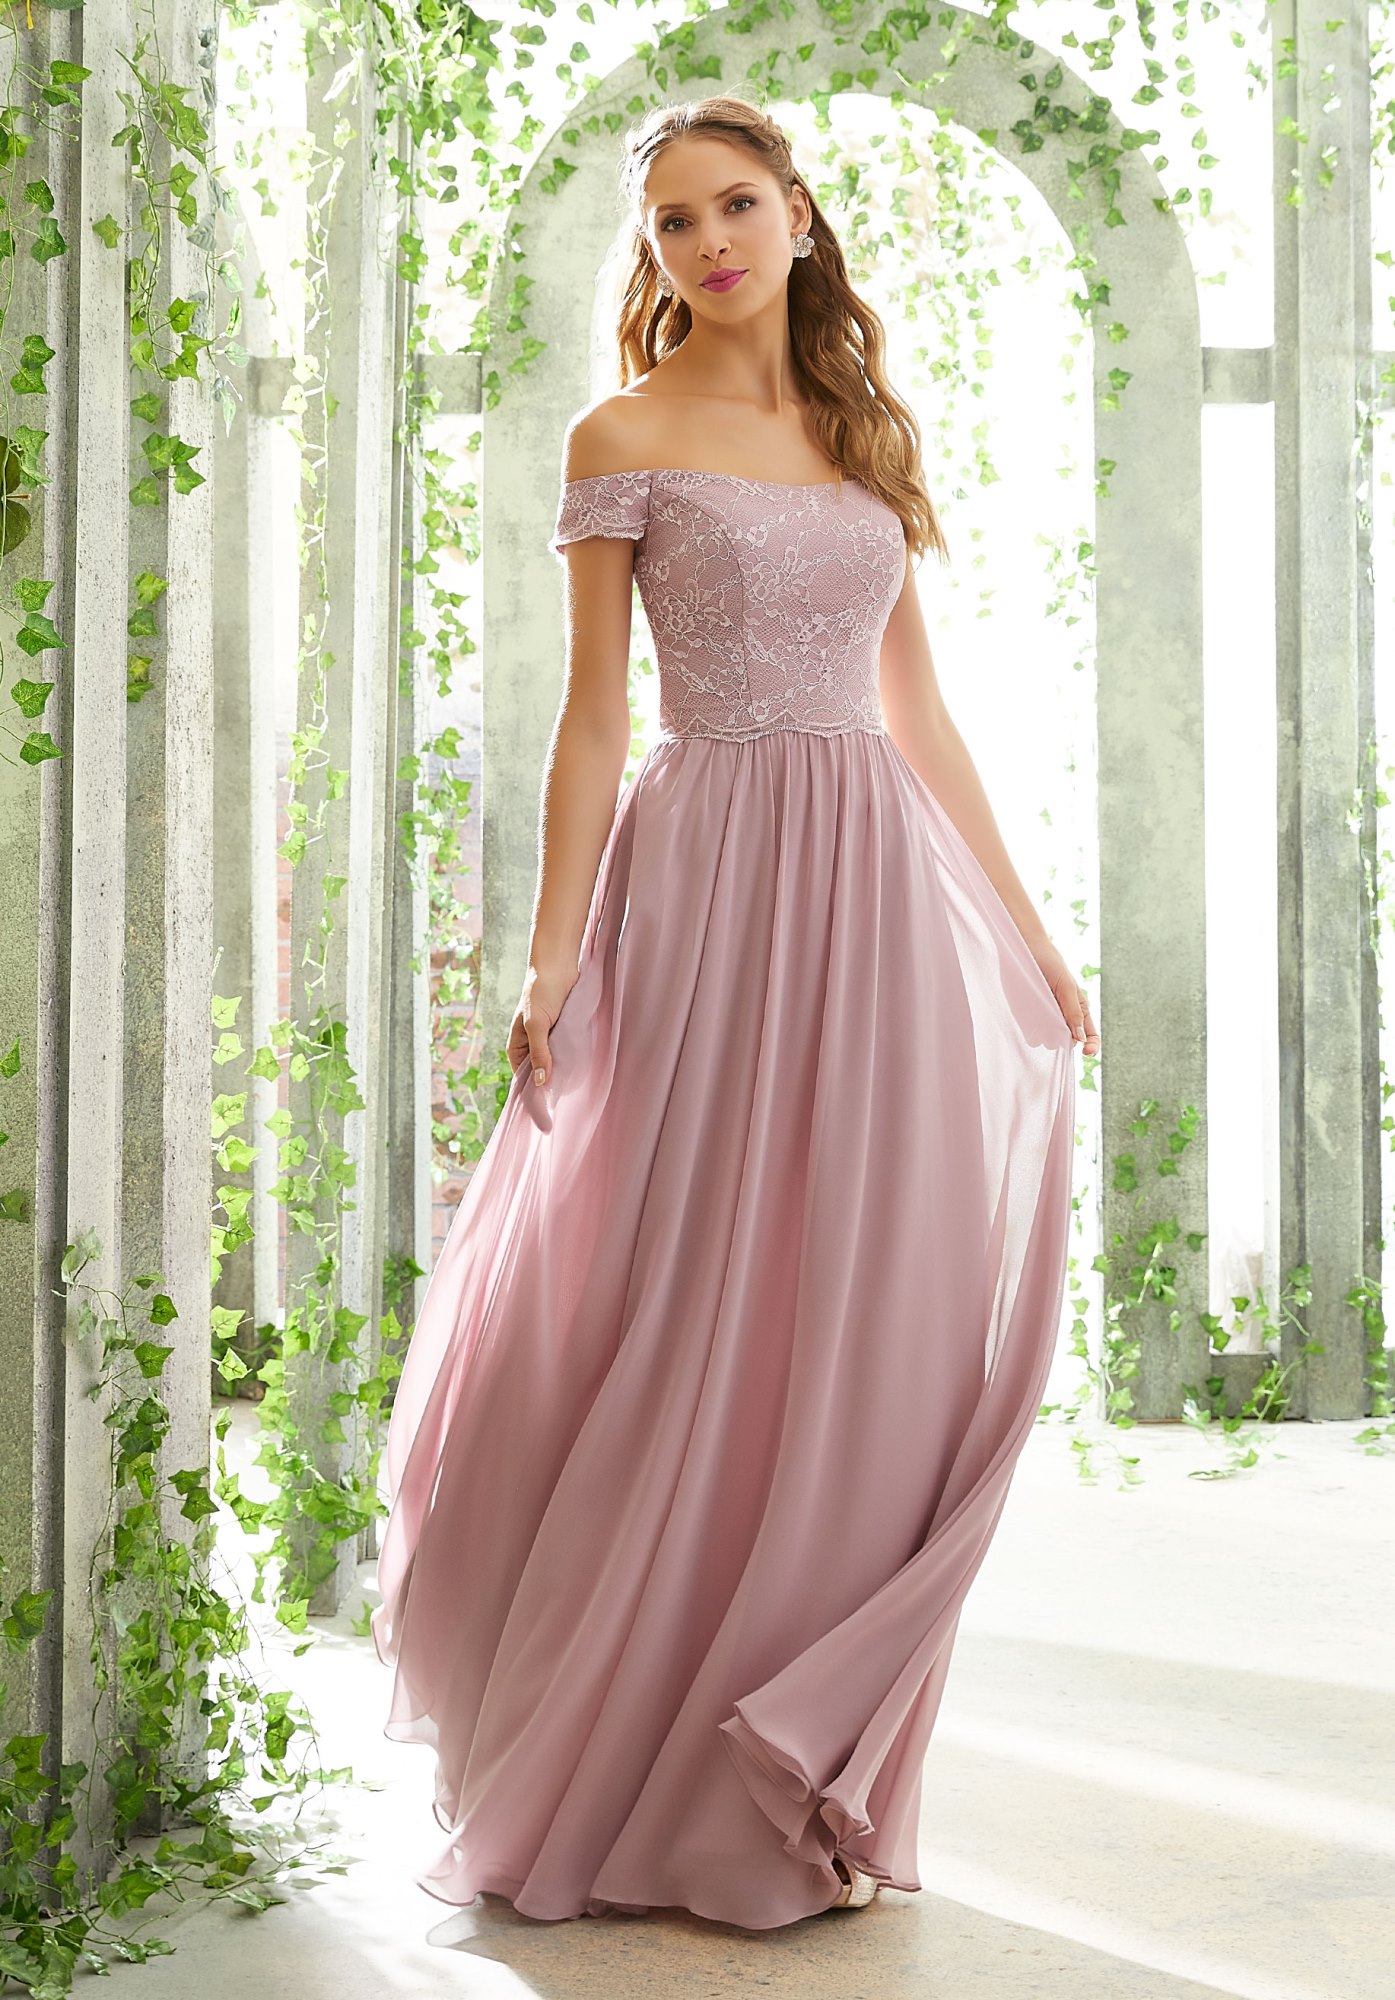 Dress - Mori Lee BRIDESMAIDS Spring 2019 Collection: 21602 - Chantilly ...